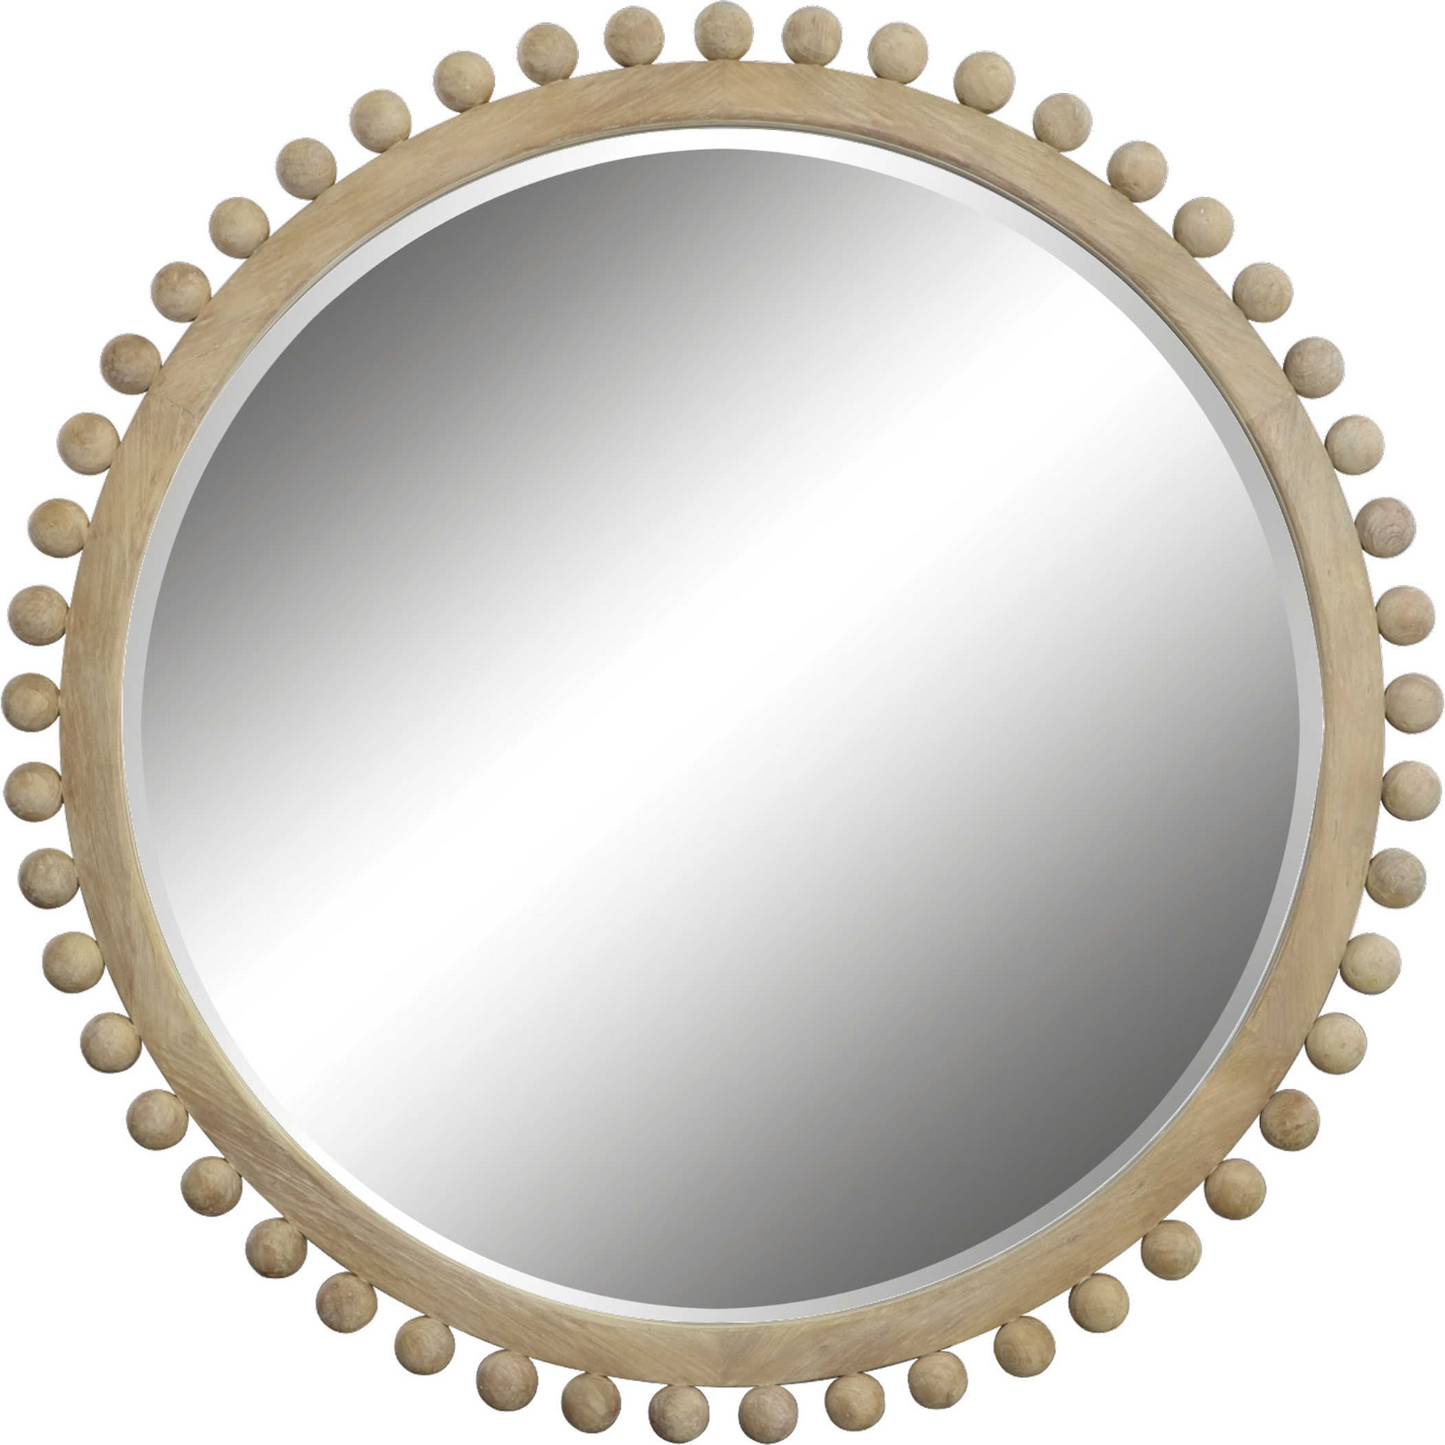 Brianza Round Mirror